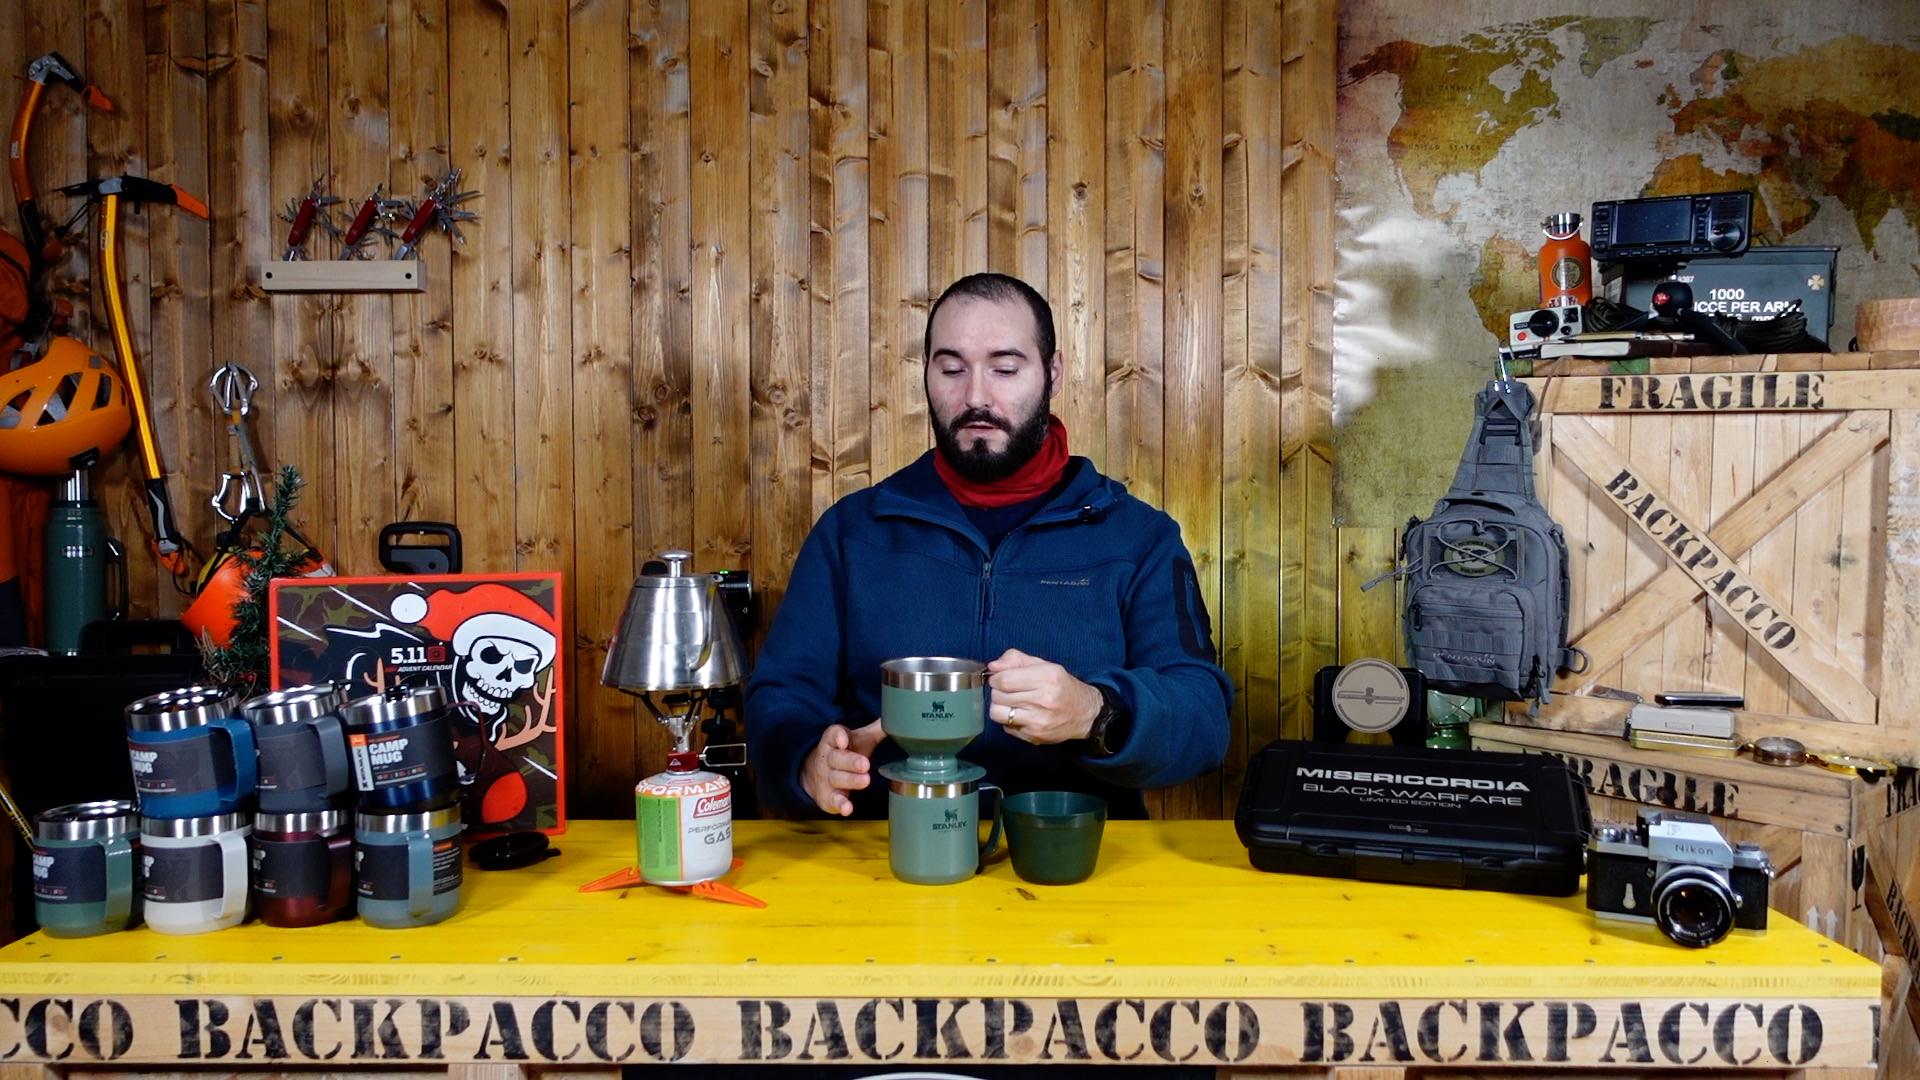 copertina del video dove paolo di backpacco mostra come si prepara il caffè con stanley perfect brew e stanley camp mug